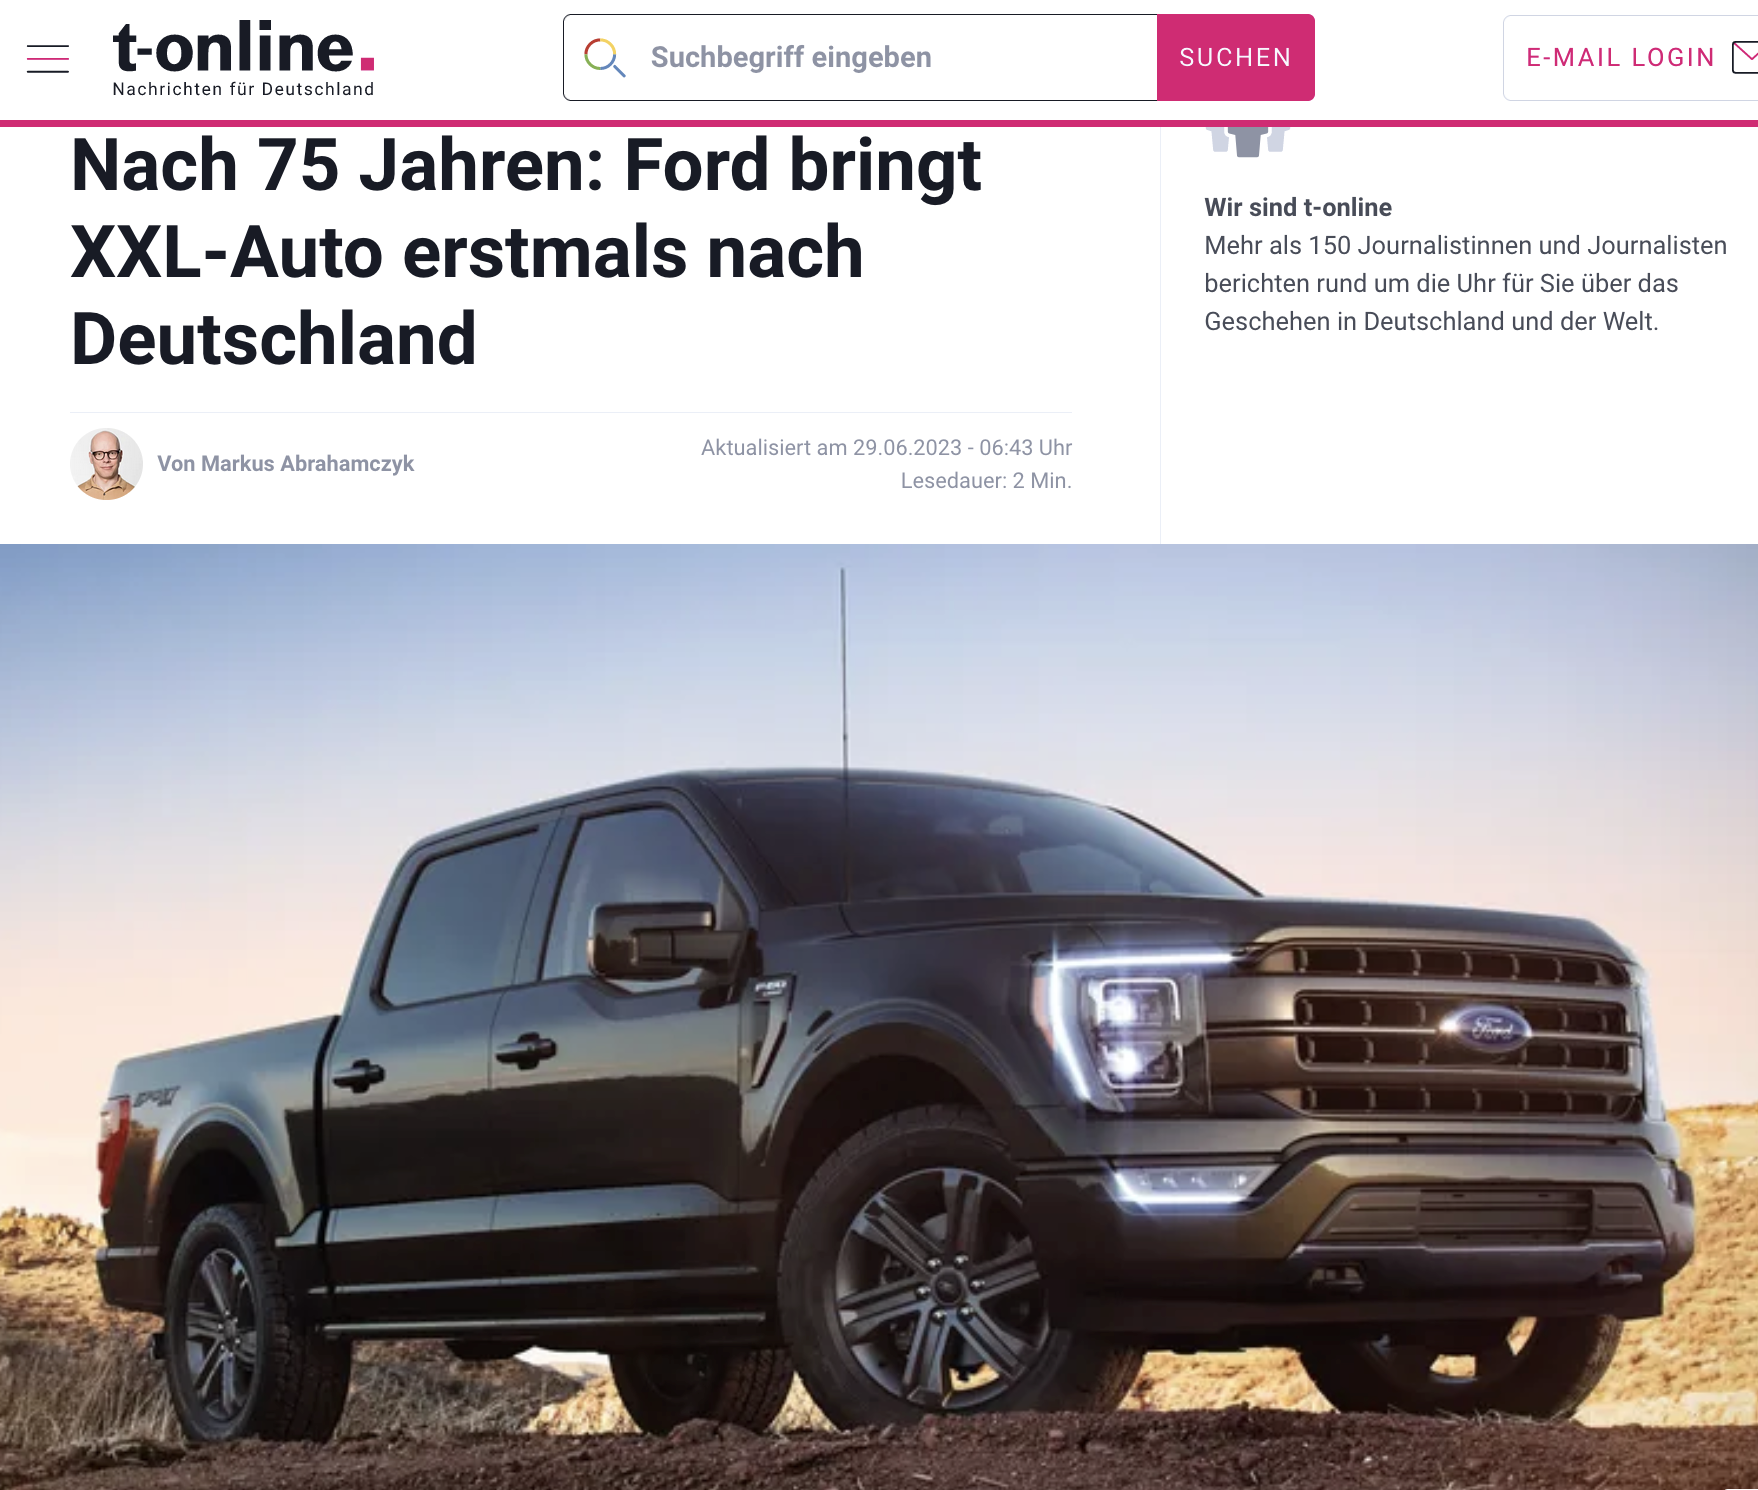 Screenshot: Ford bringt XXL-Auto nach Deutschland.